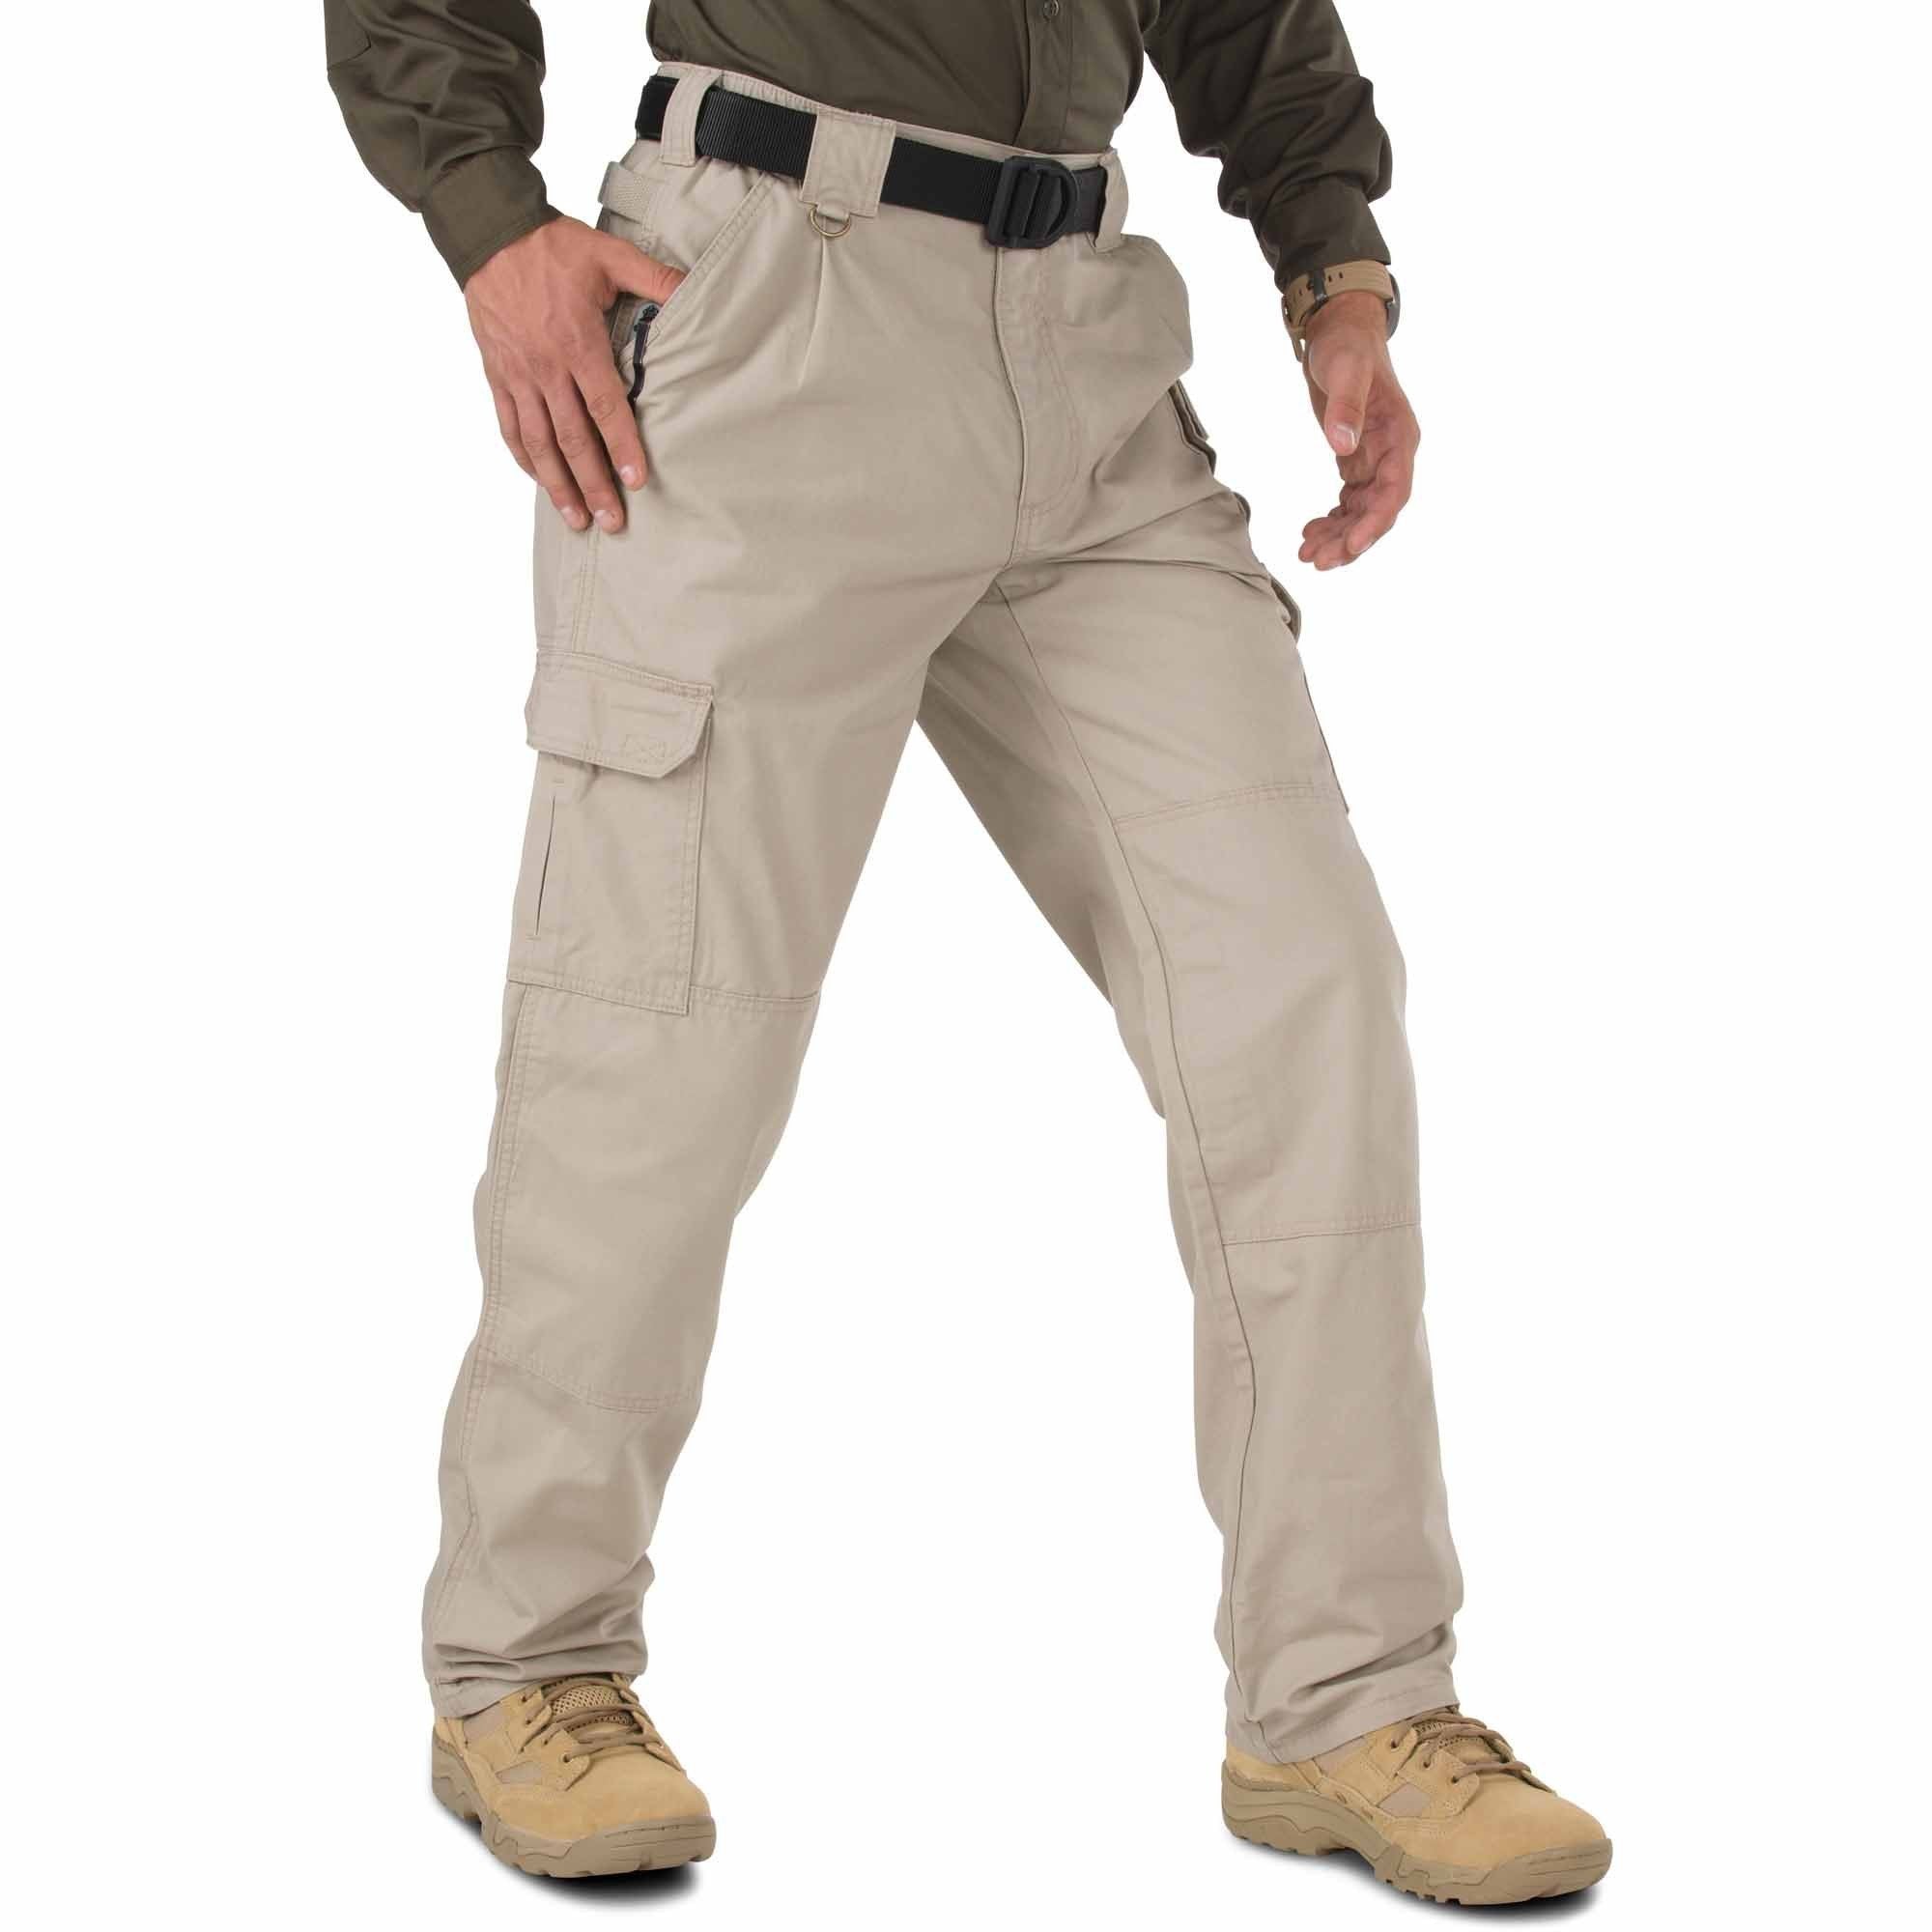 5.11 Tactical Pants - Khaki Pants 5.11 Tactical 28 30 Tactical Gear Supplier Tactical Distributors Australia